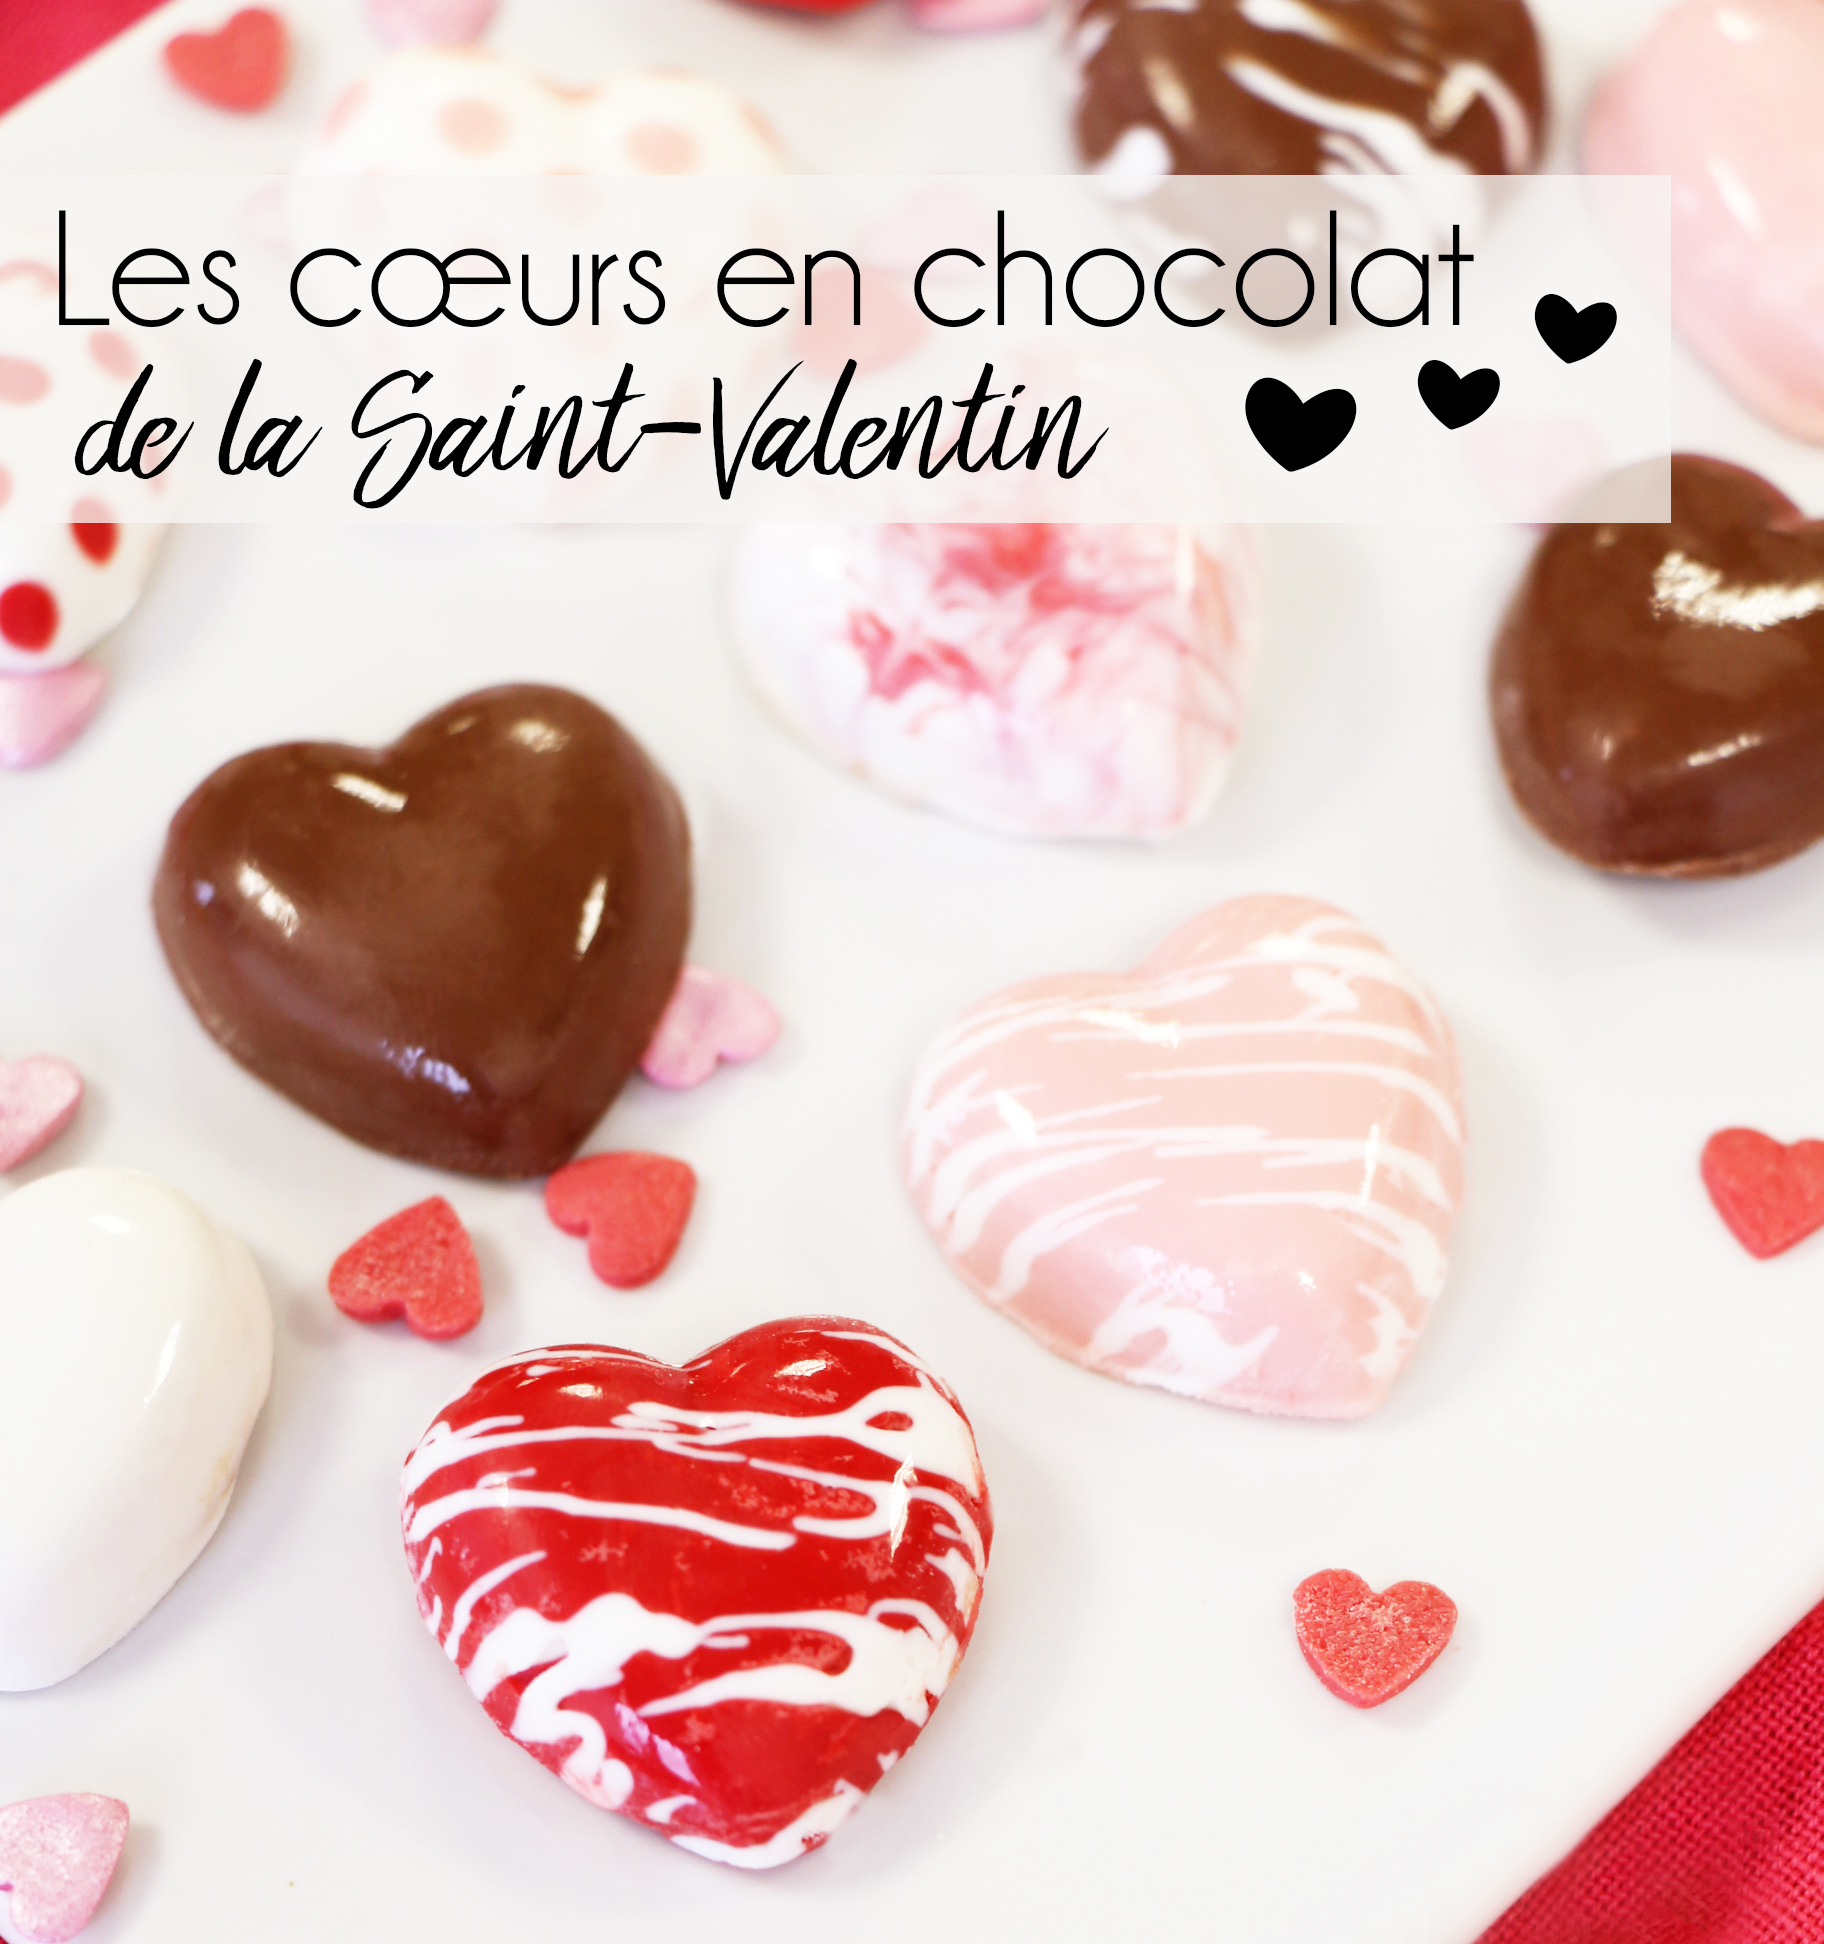 Pour la Saint Valentin, le cœur des chocolats gourmands se trouve